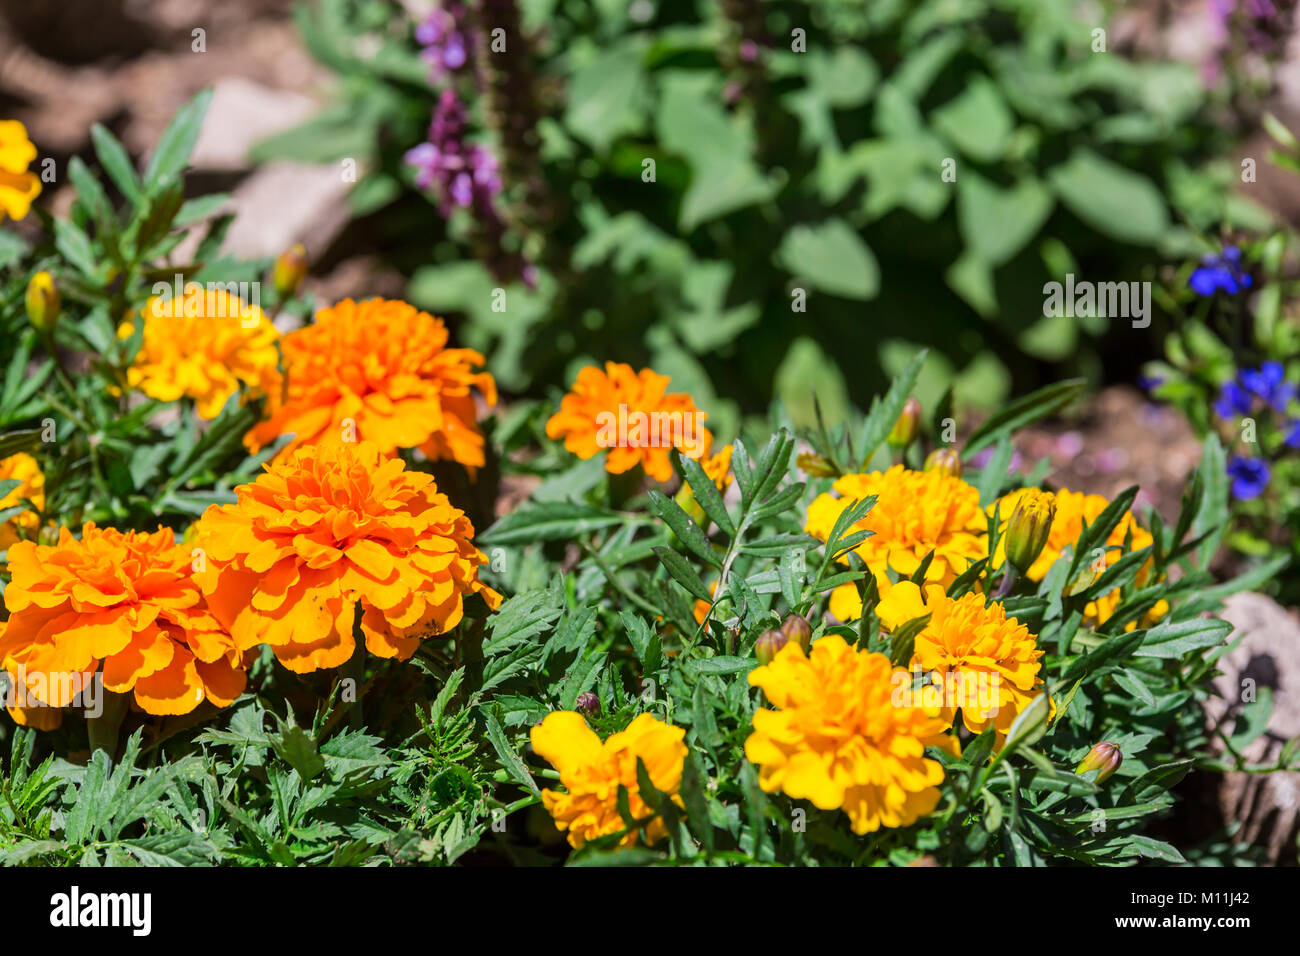 Beautiful colorful flowers. Rocca di Mezzo, province of L'Aquila, Abruzzo, Italy Stock Photo